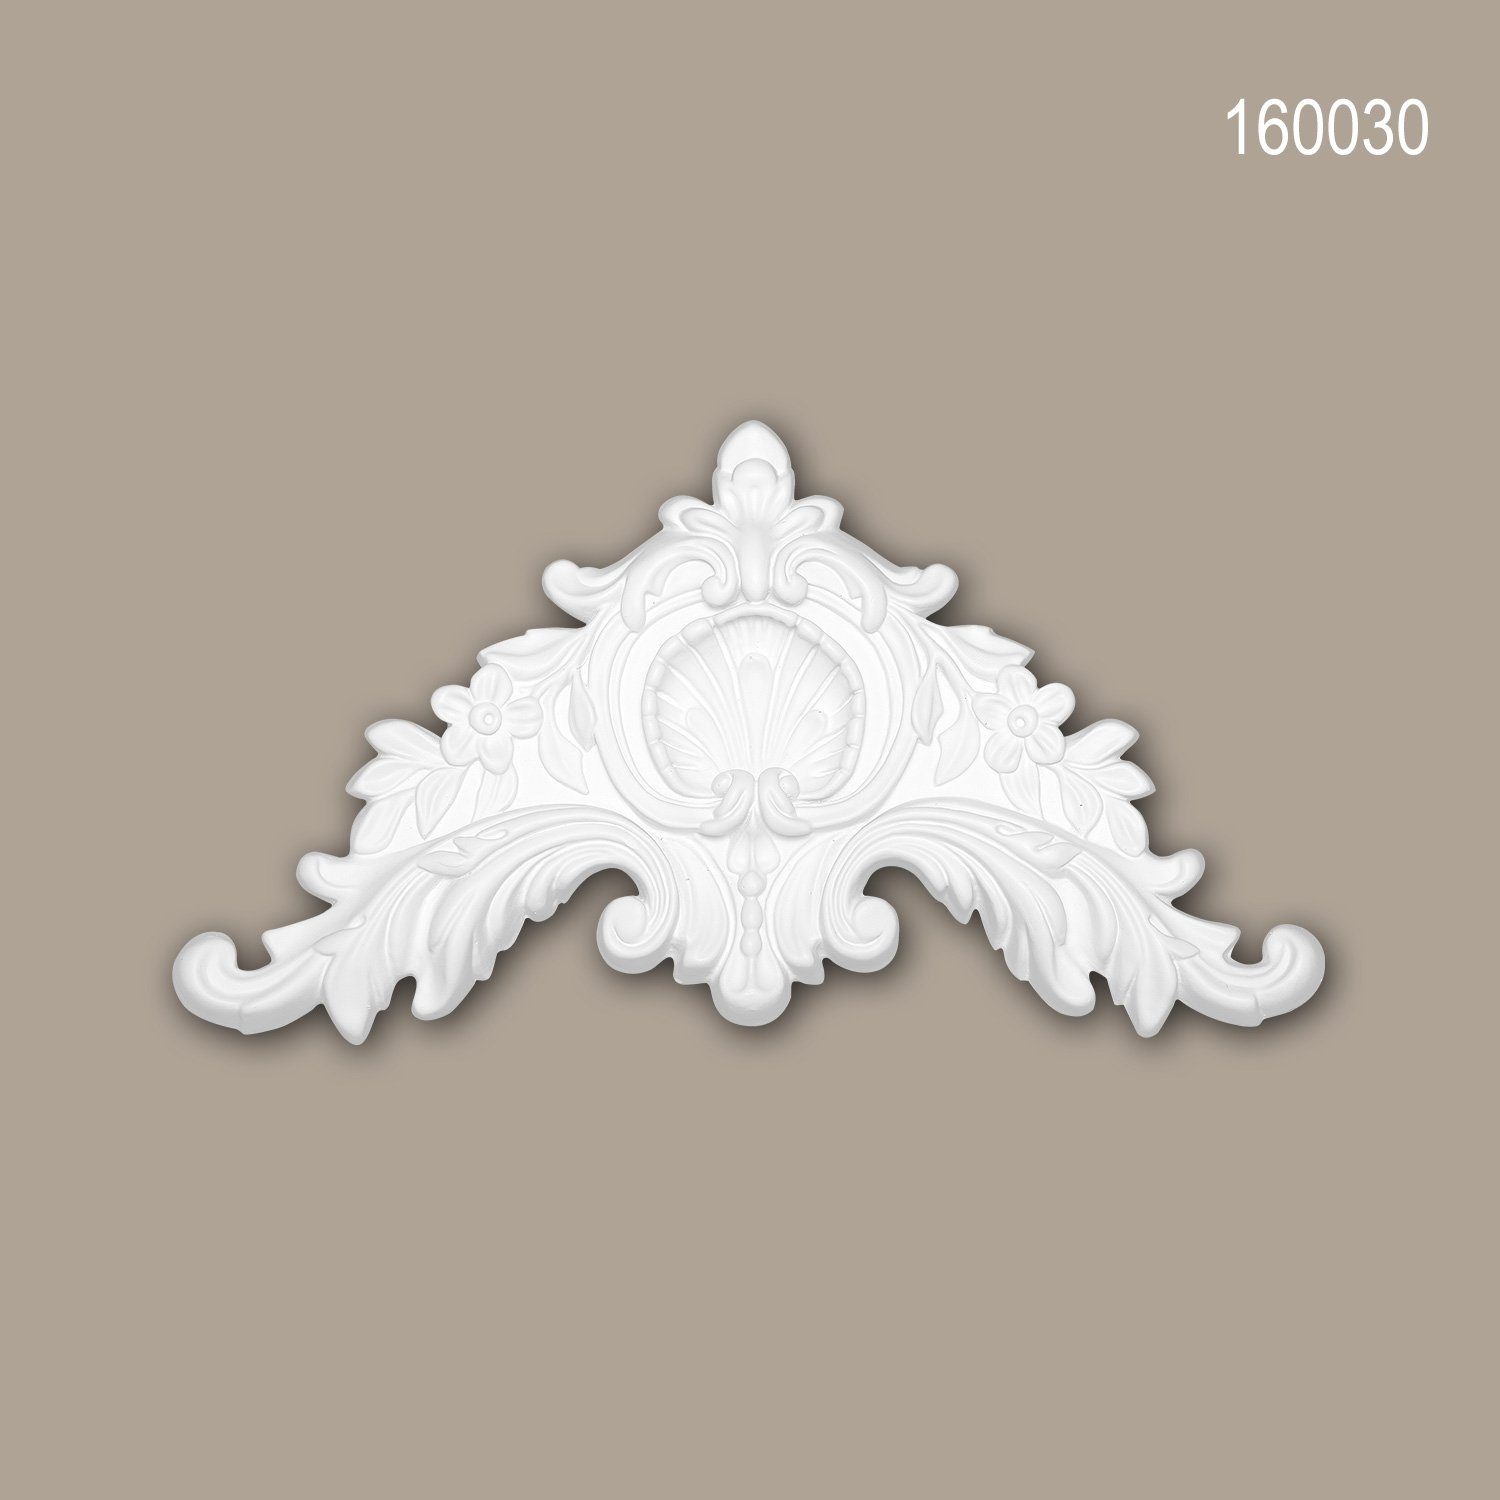 Profhome Wanddekoobjekt 160030 (Zierelement, 1 St., Stuckdekor, Schmuckelement, Verzierung, Dekor Ornament), weiß, vorgrundiert, Stil: Neo-Klassizismus